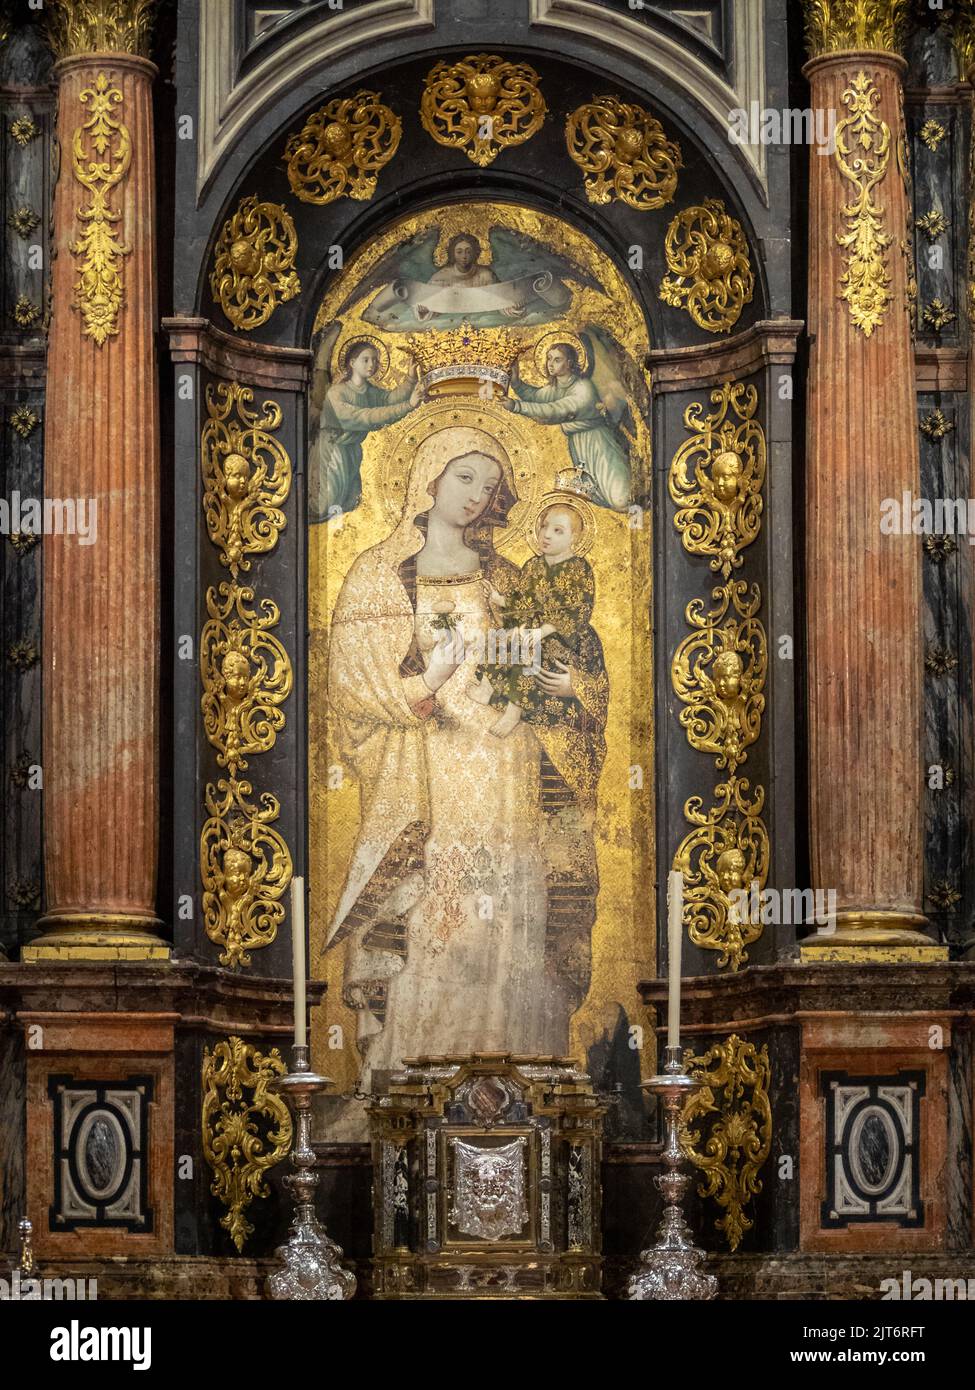 Virgen de la Antigua, Seville Cathedral Stock Photo